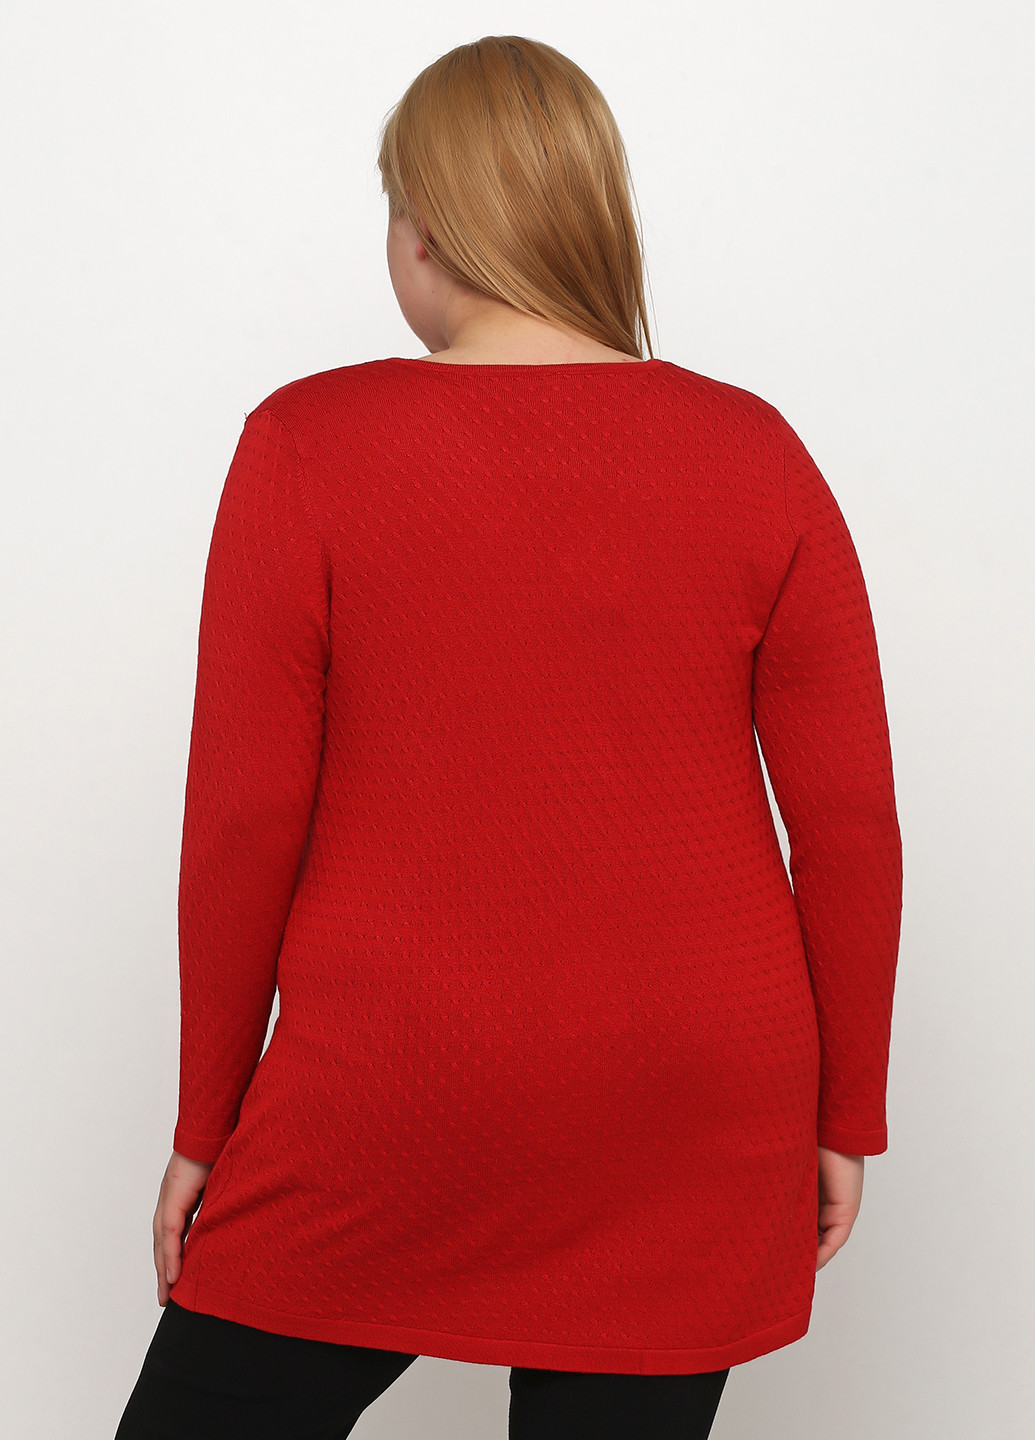 Красный демисезонный пуловер пуловер Ciso